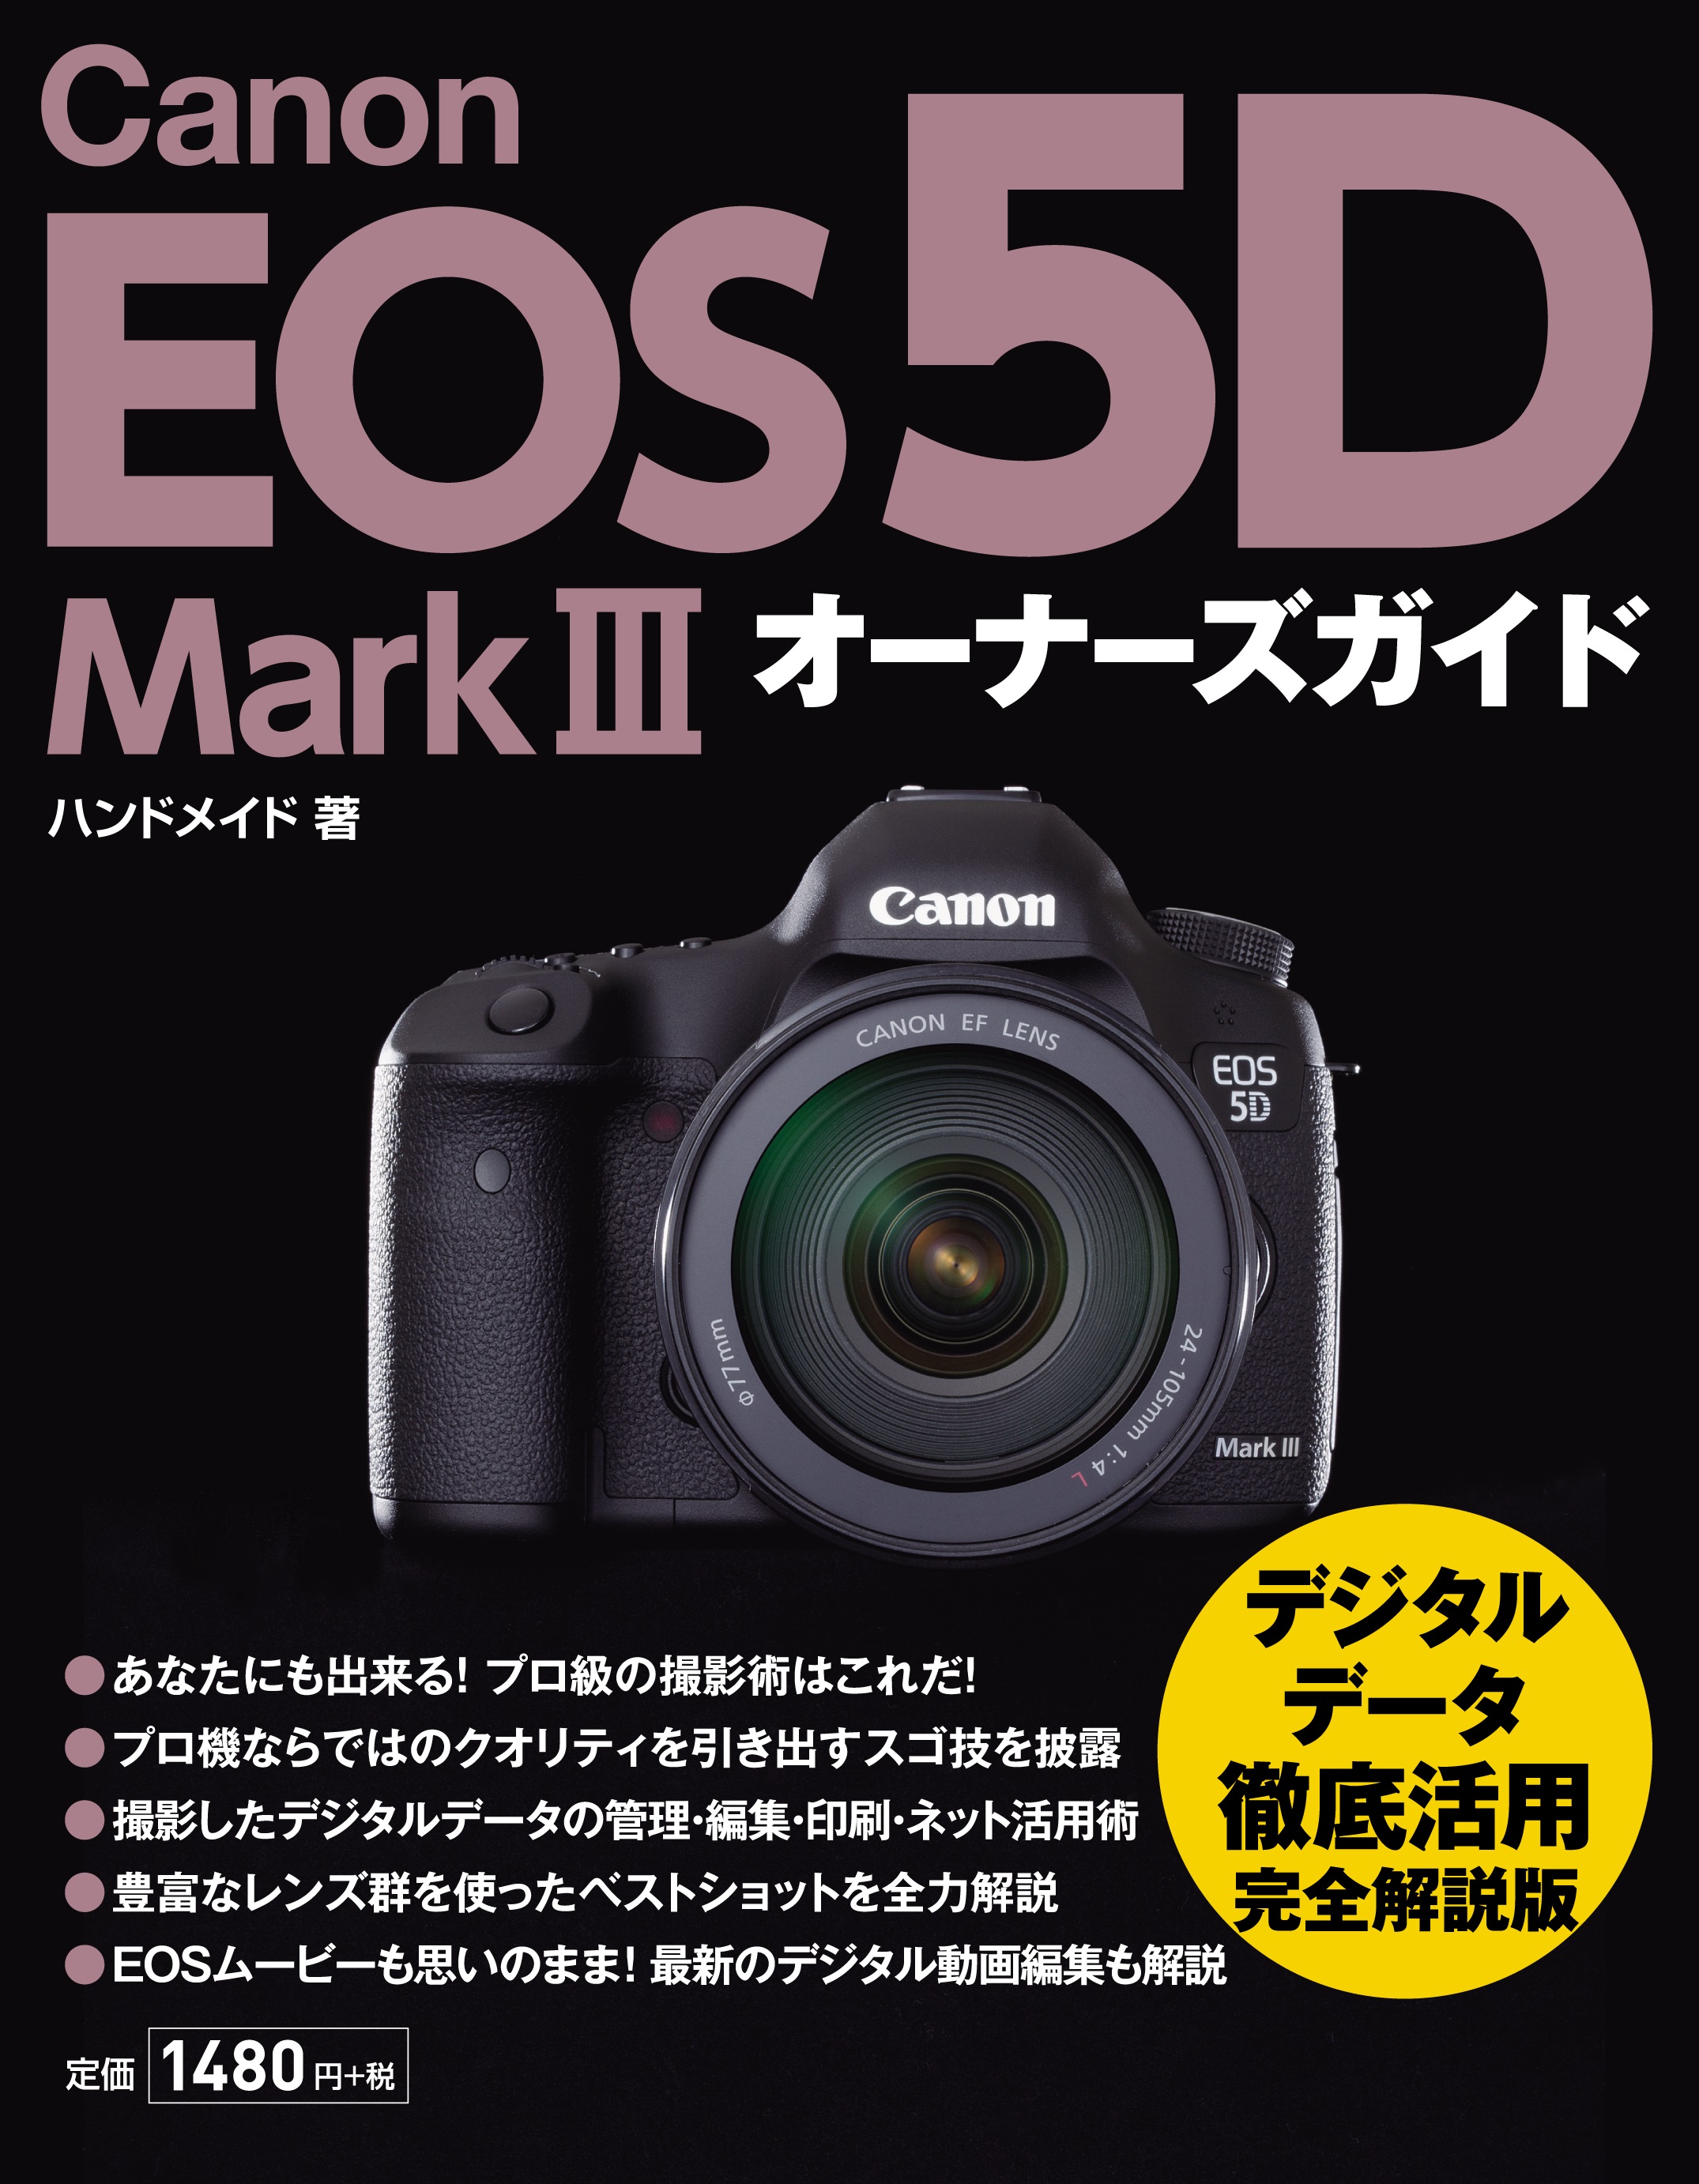 Canon EOS 5D Mark III オーナーズガイド - ハンドメイド - 漫画